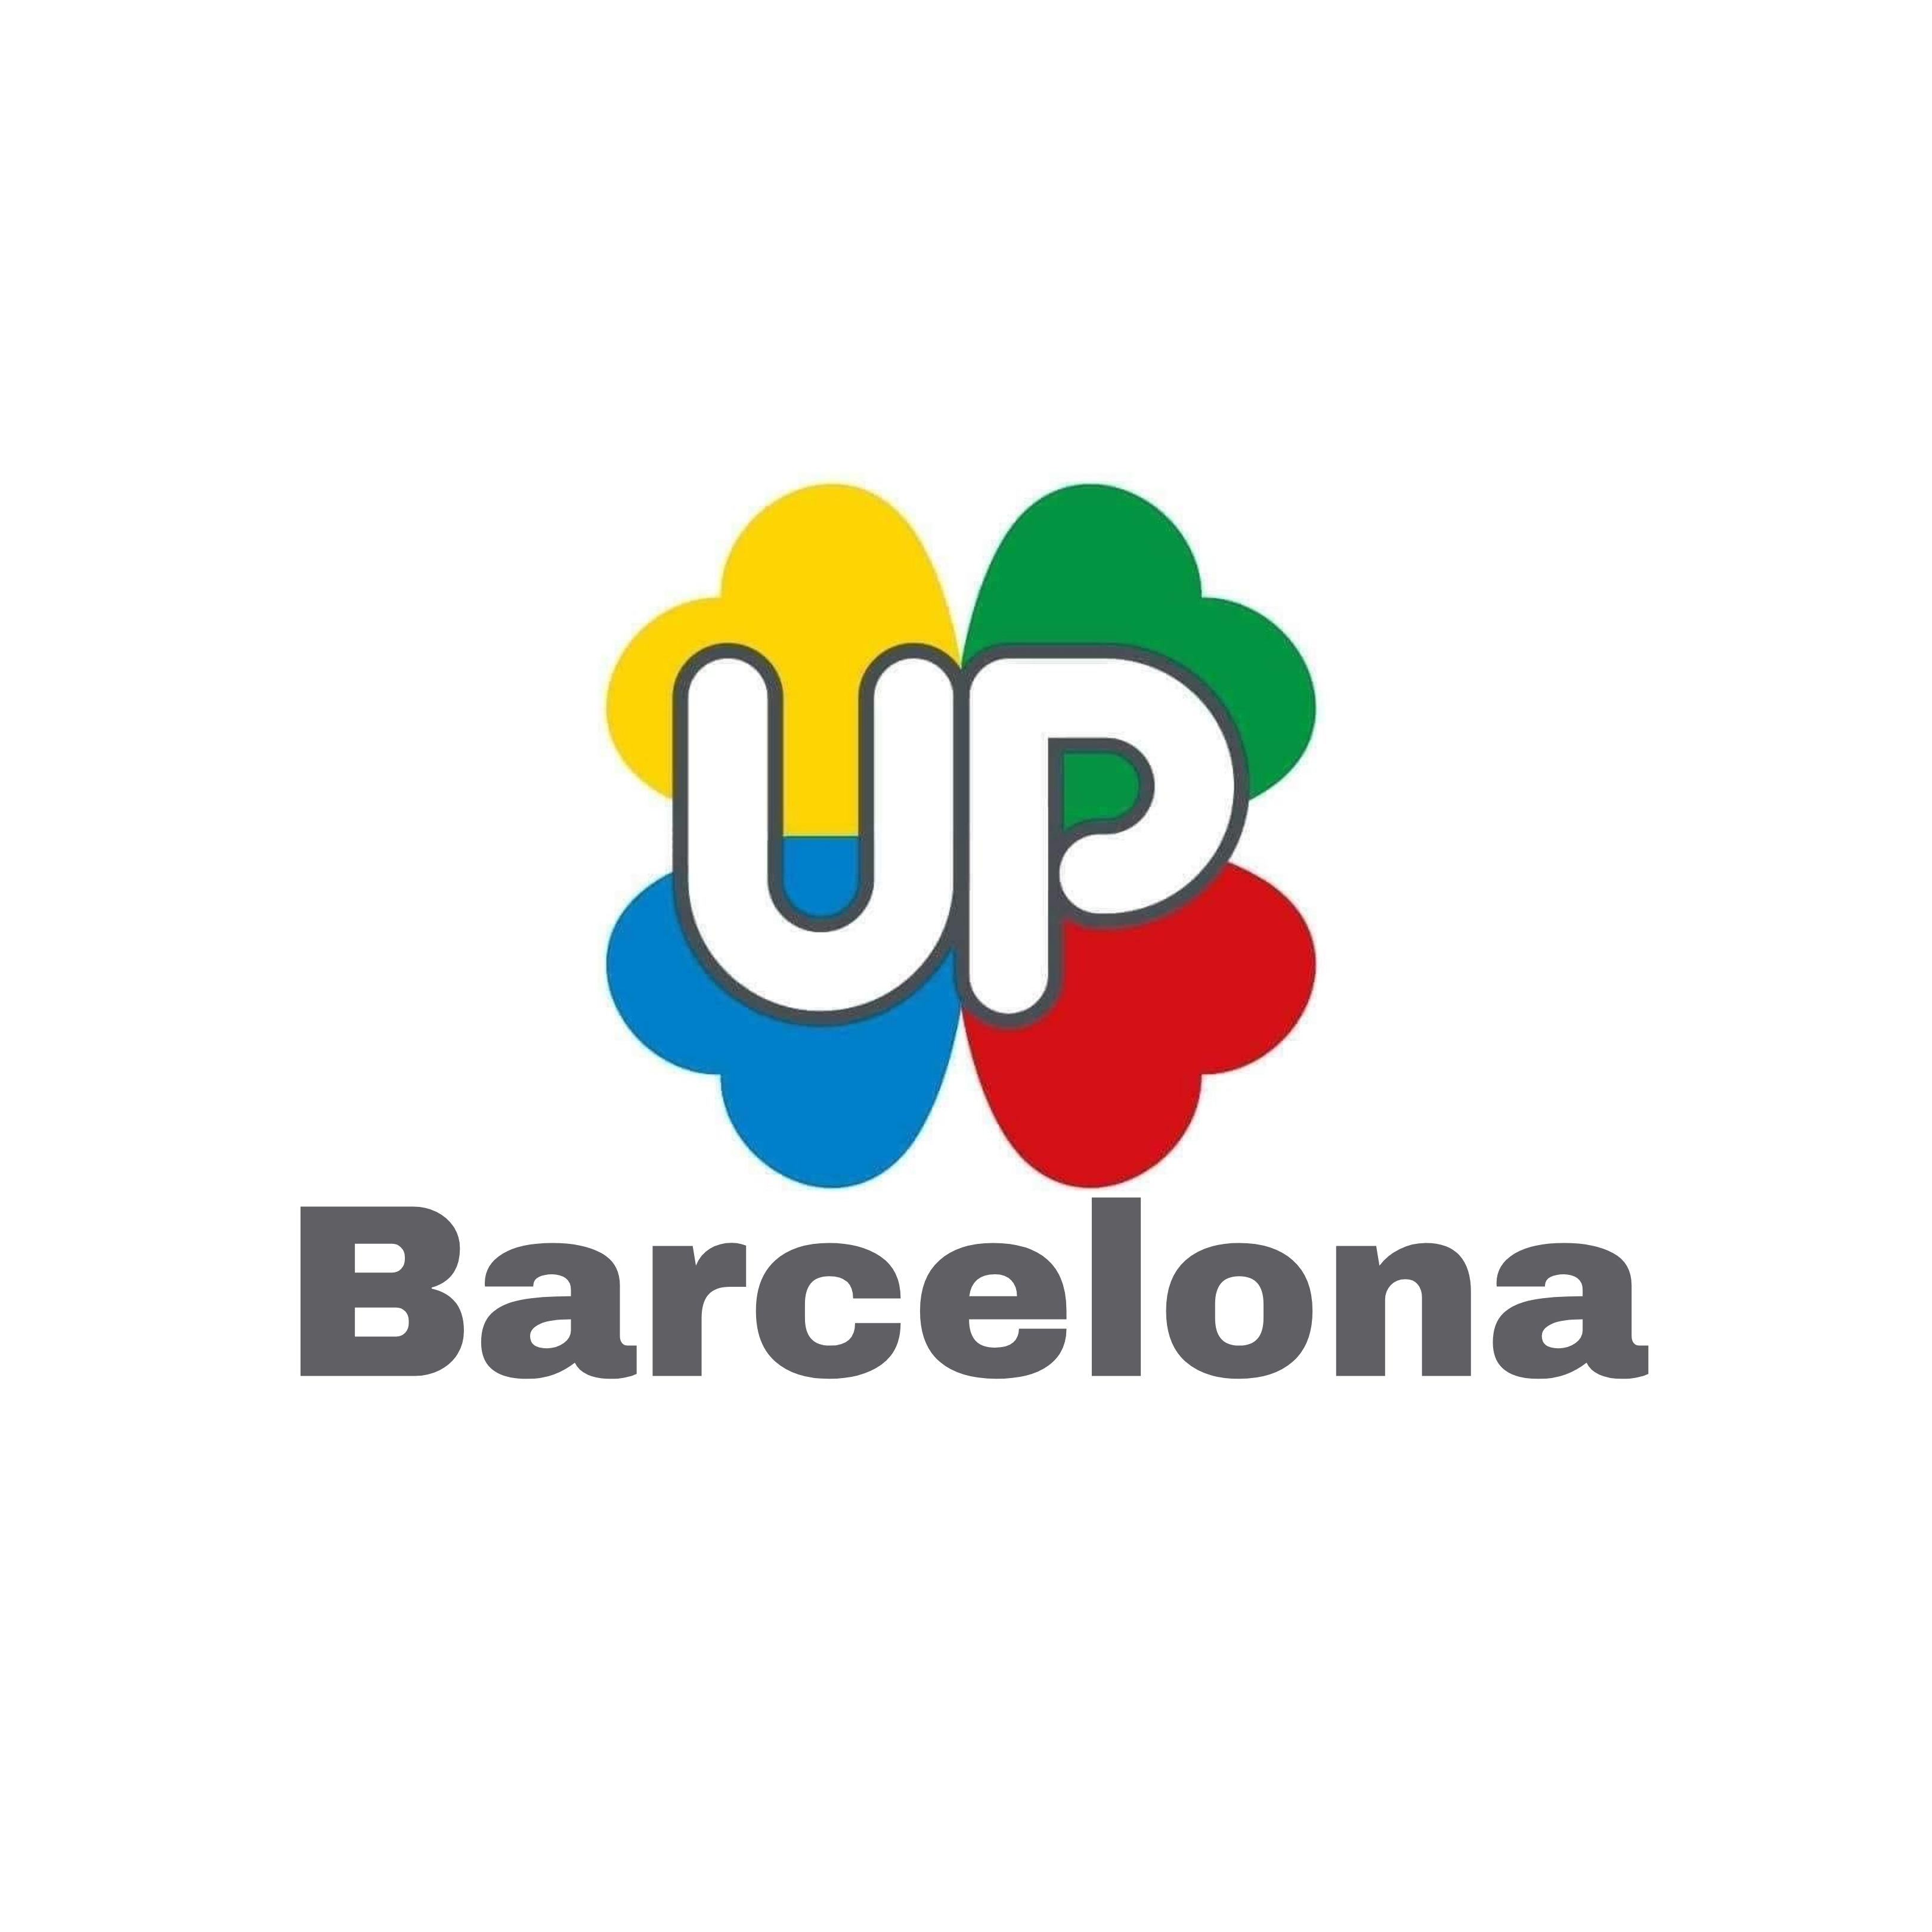 Logo agrupación Barcelona